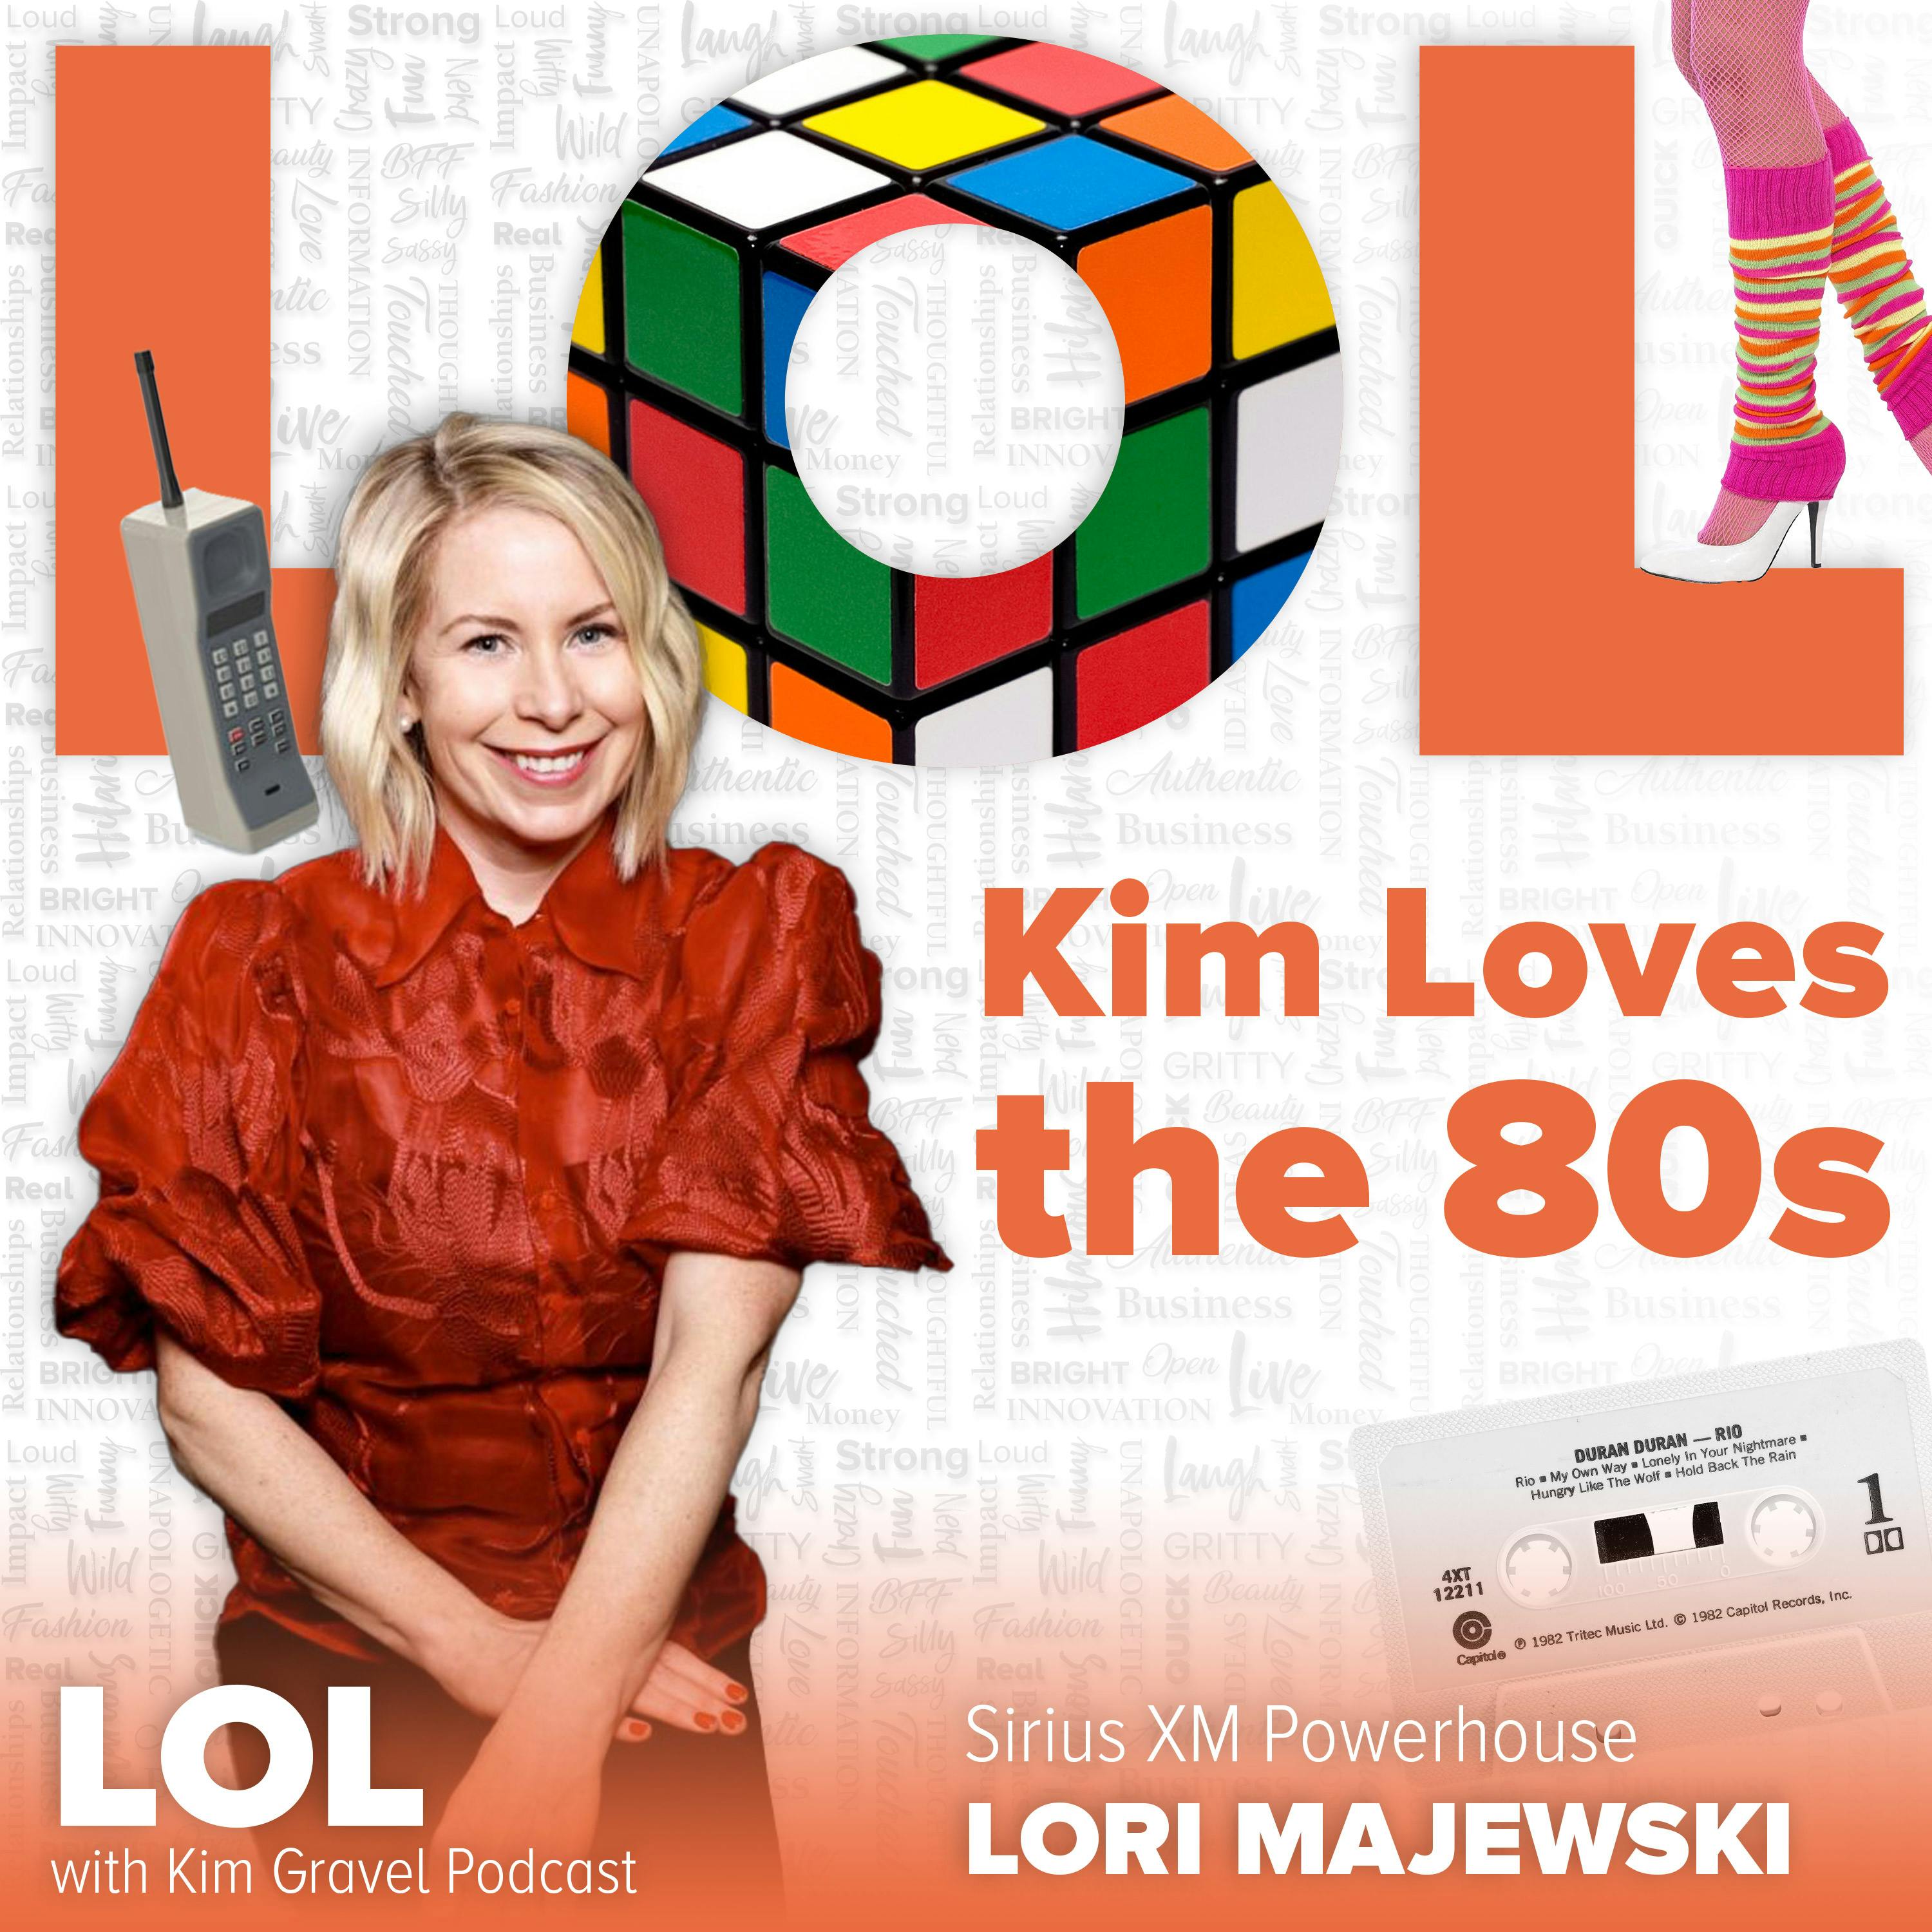 Kim Loves the 80s with Sirius XM Powerhouse Lori Majewski